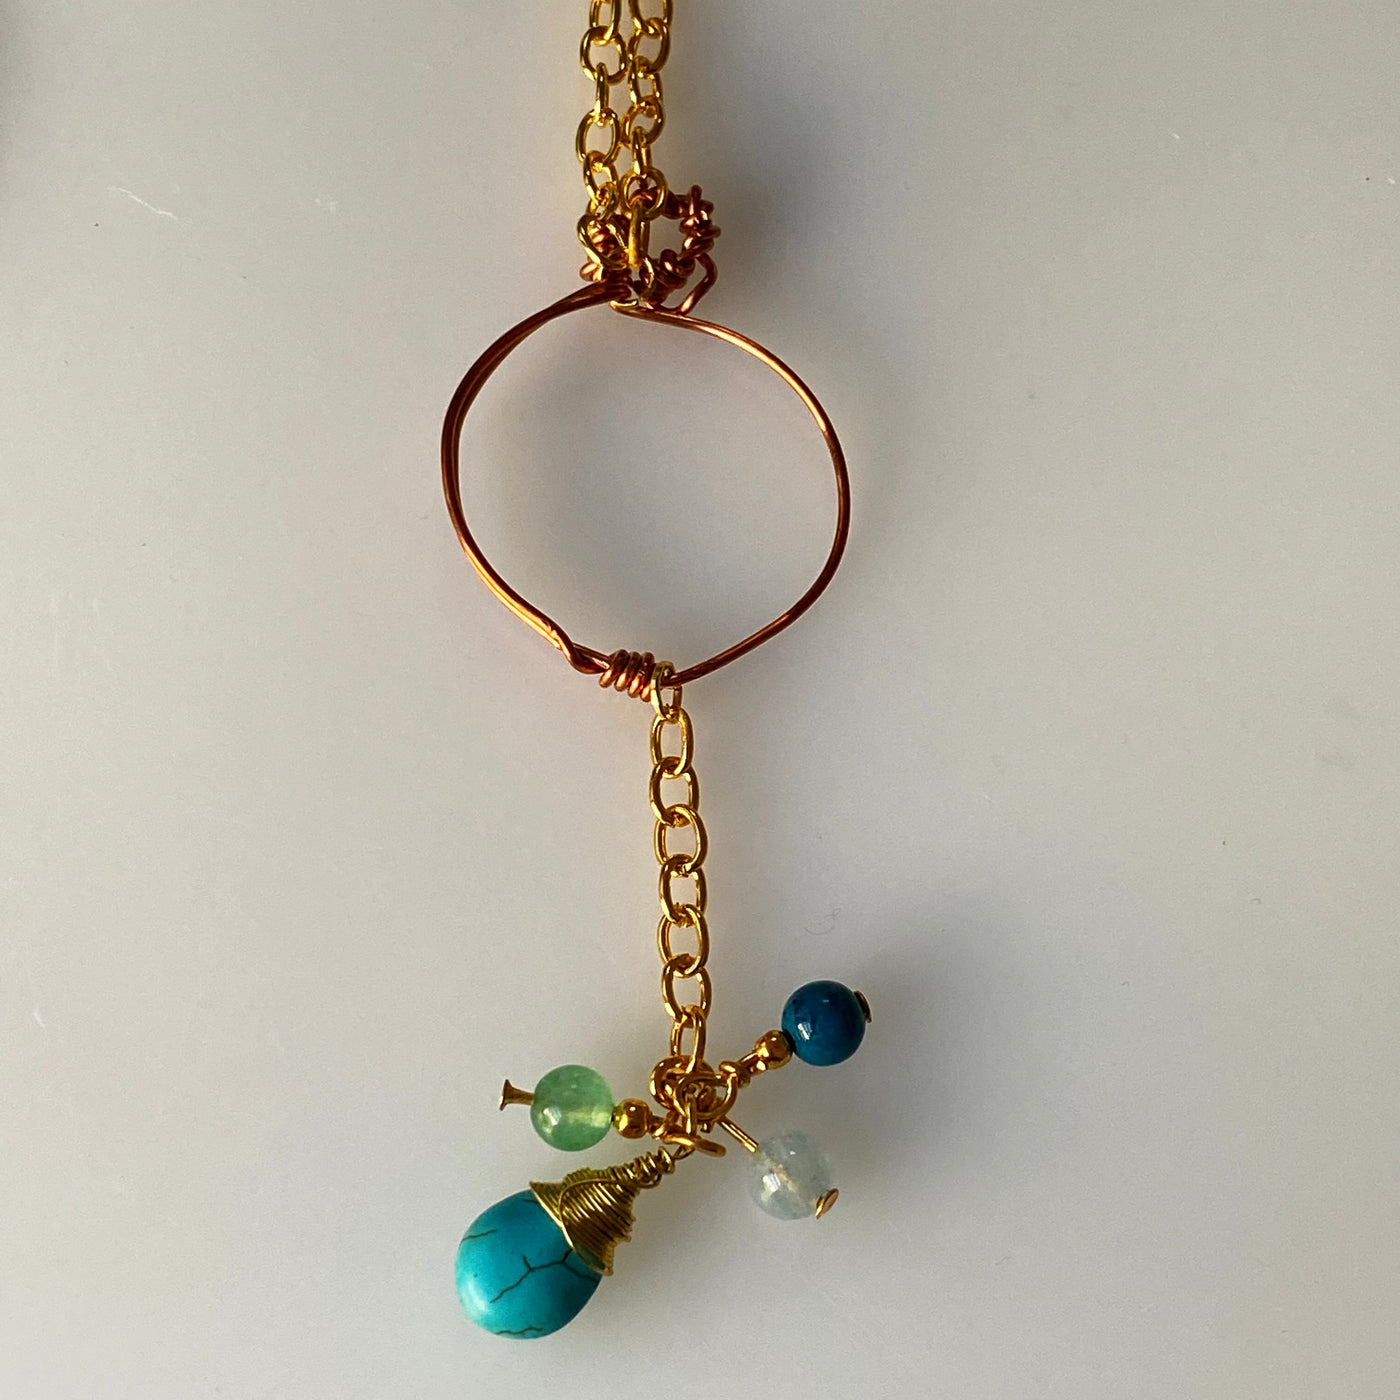 Briolette de perles de howlite bleu tourquoise naturelle, aigue-marine, crysocolle, aventurine et pendentif en fil de fer. Ce pendentif mesure environ 8 cm de long.